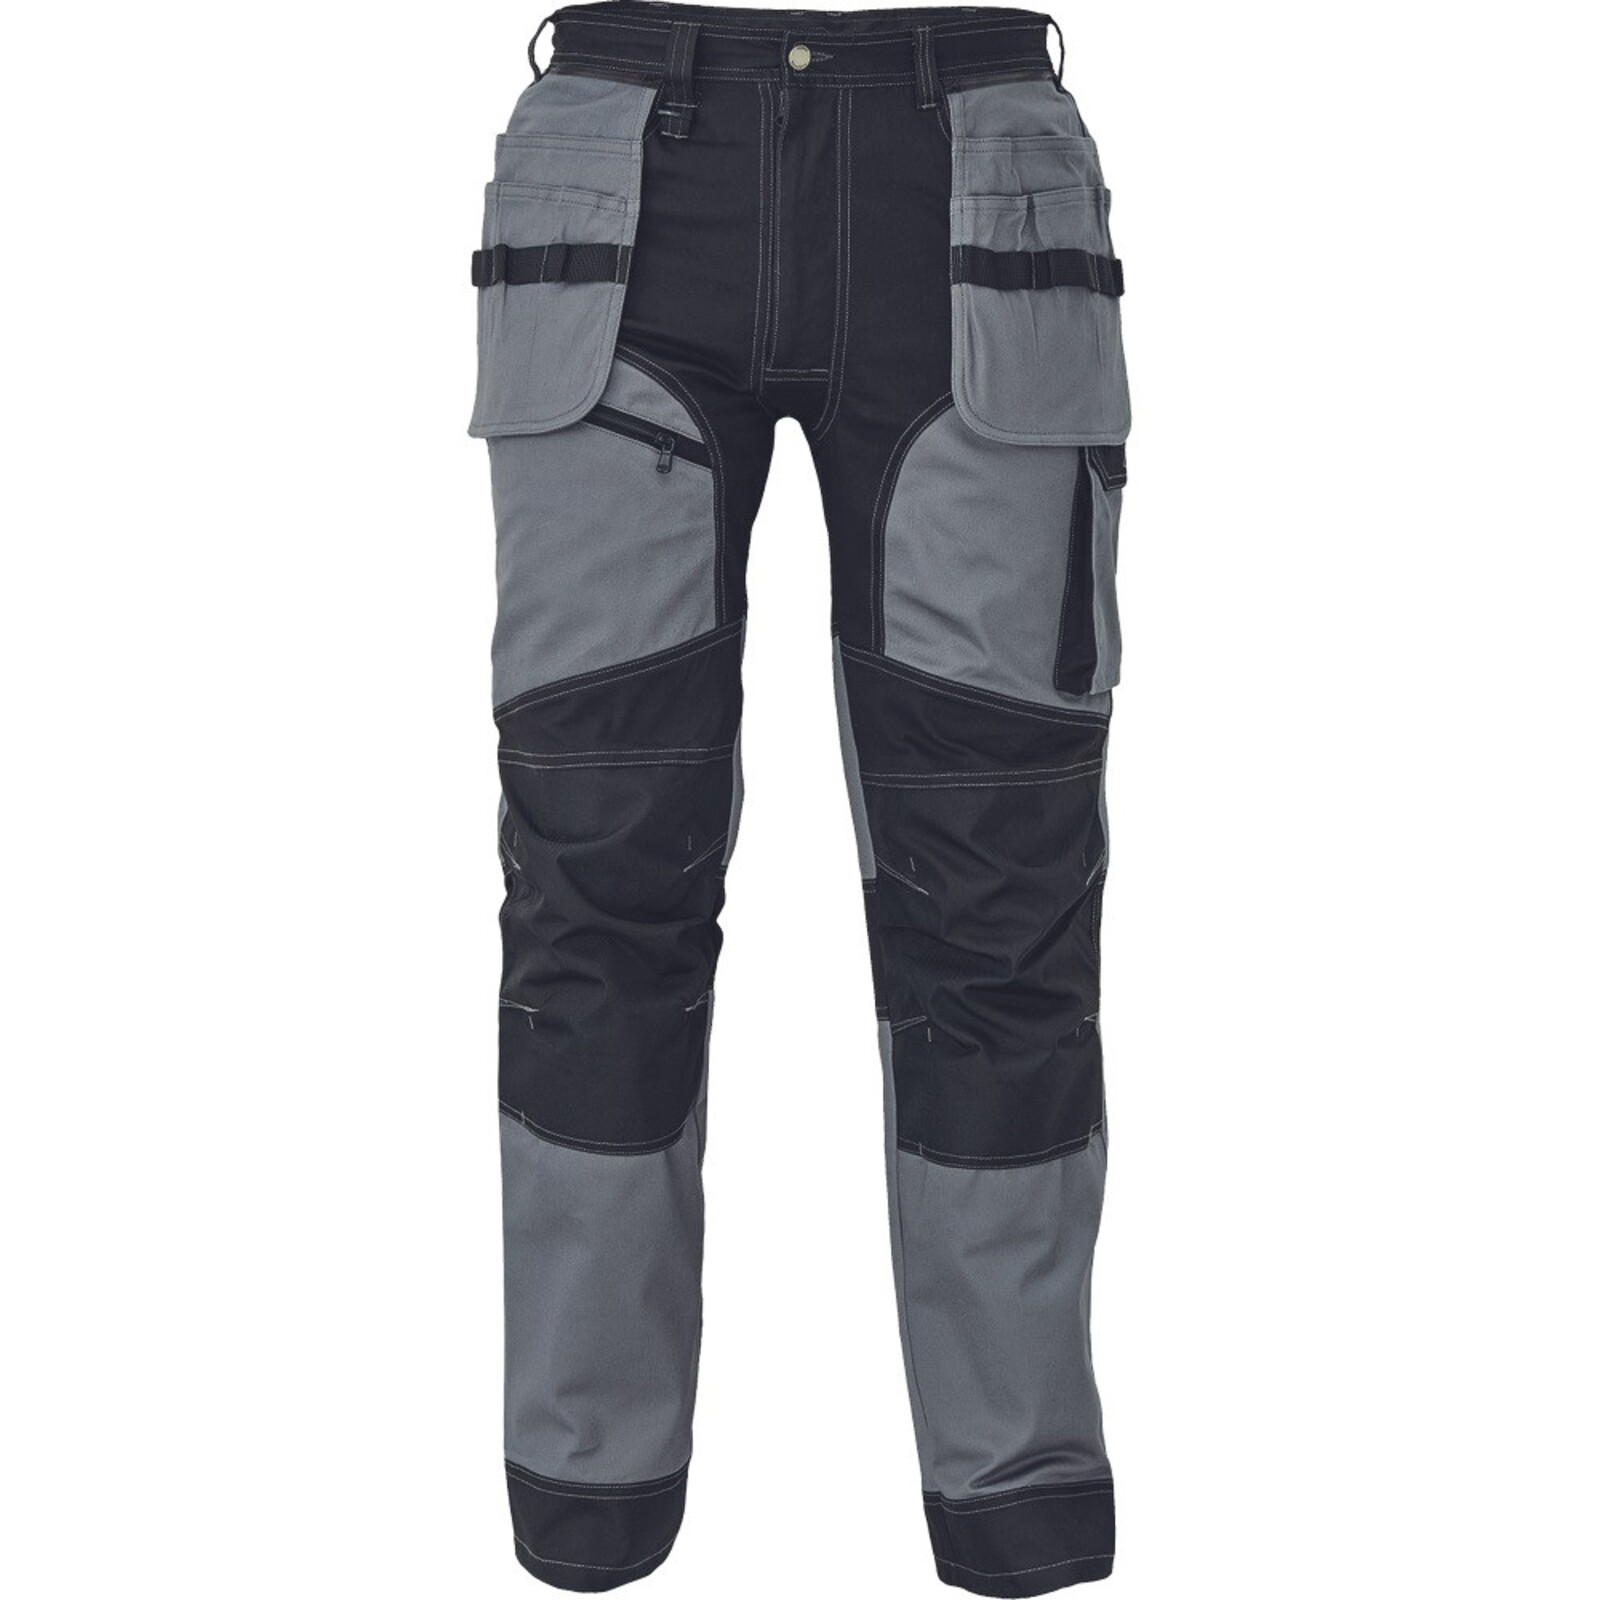 Strečové pracovné nohavice Cerva Keilor - veľkosť: 56, farba: sivá/čierna